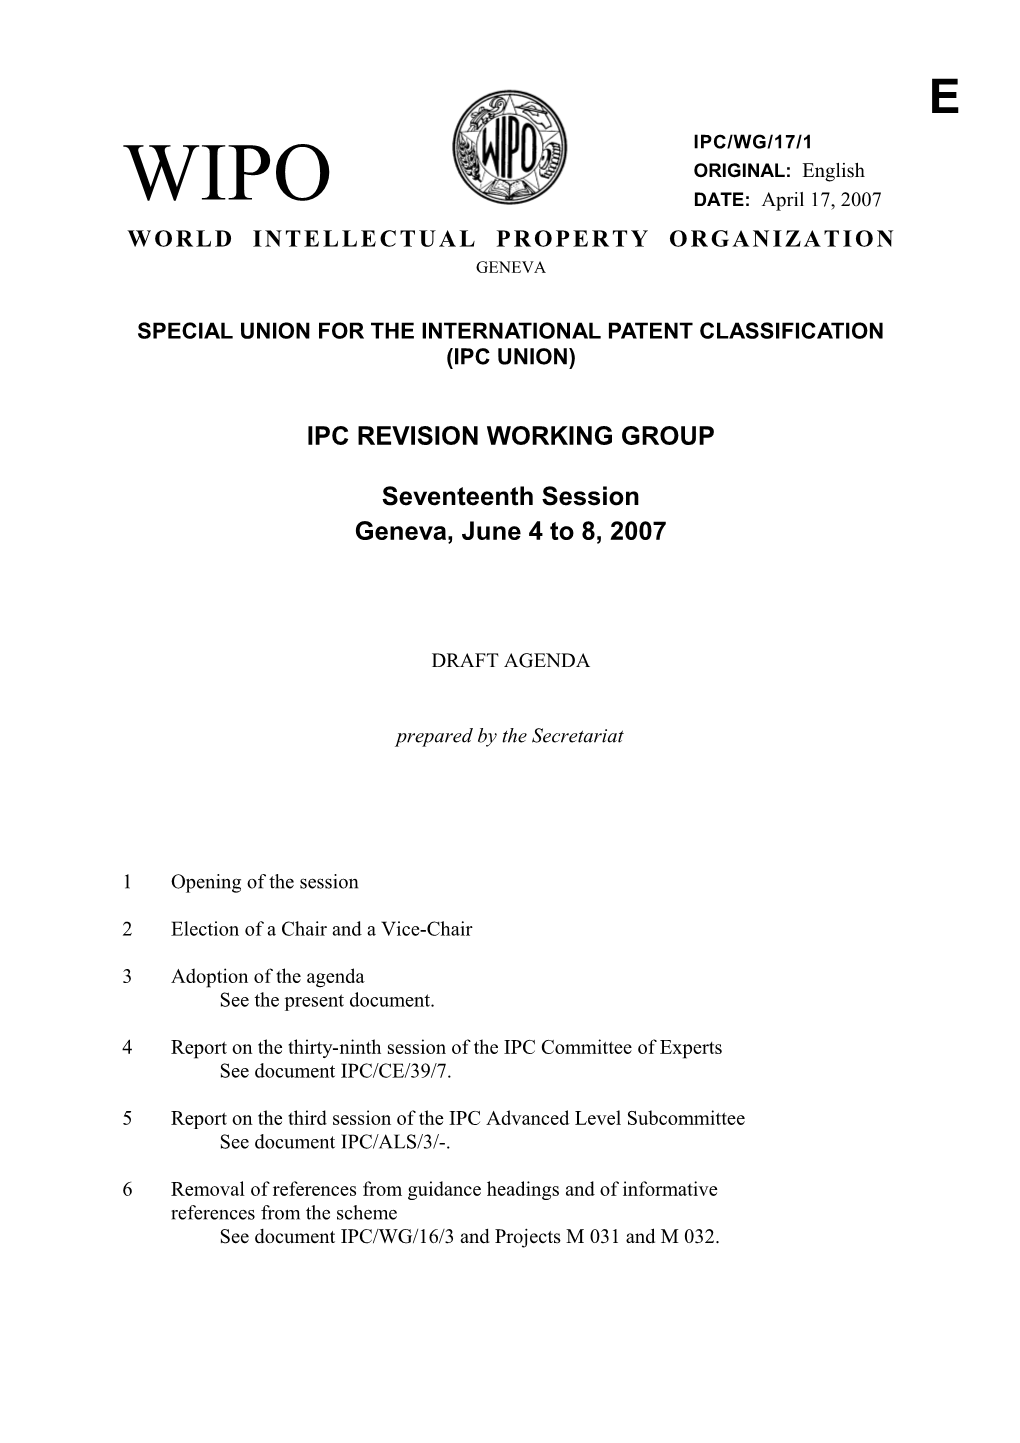 IPC/WG/17/1: Draft Agenda